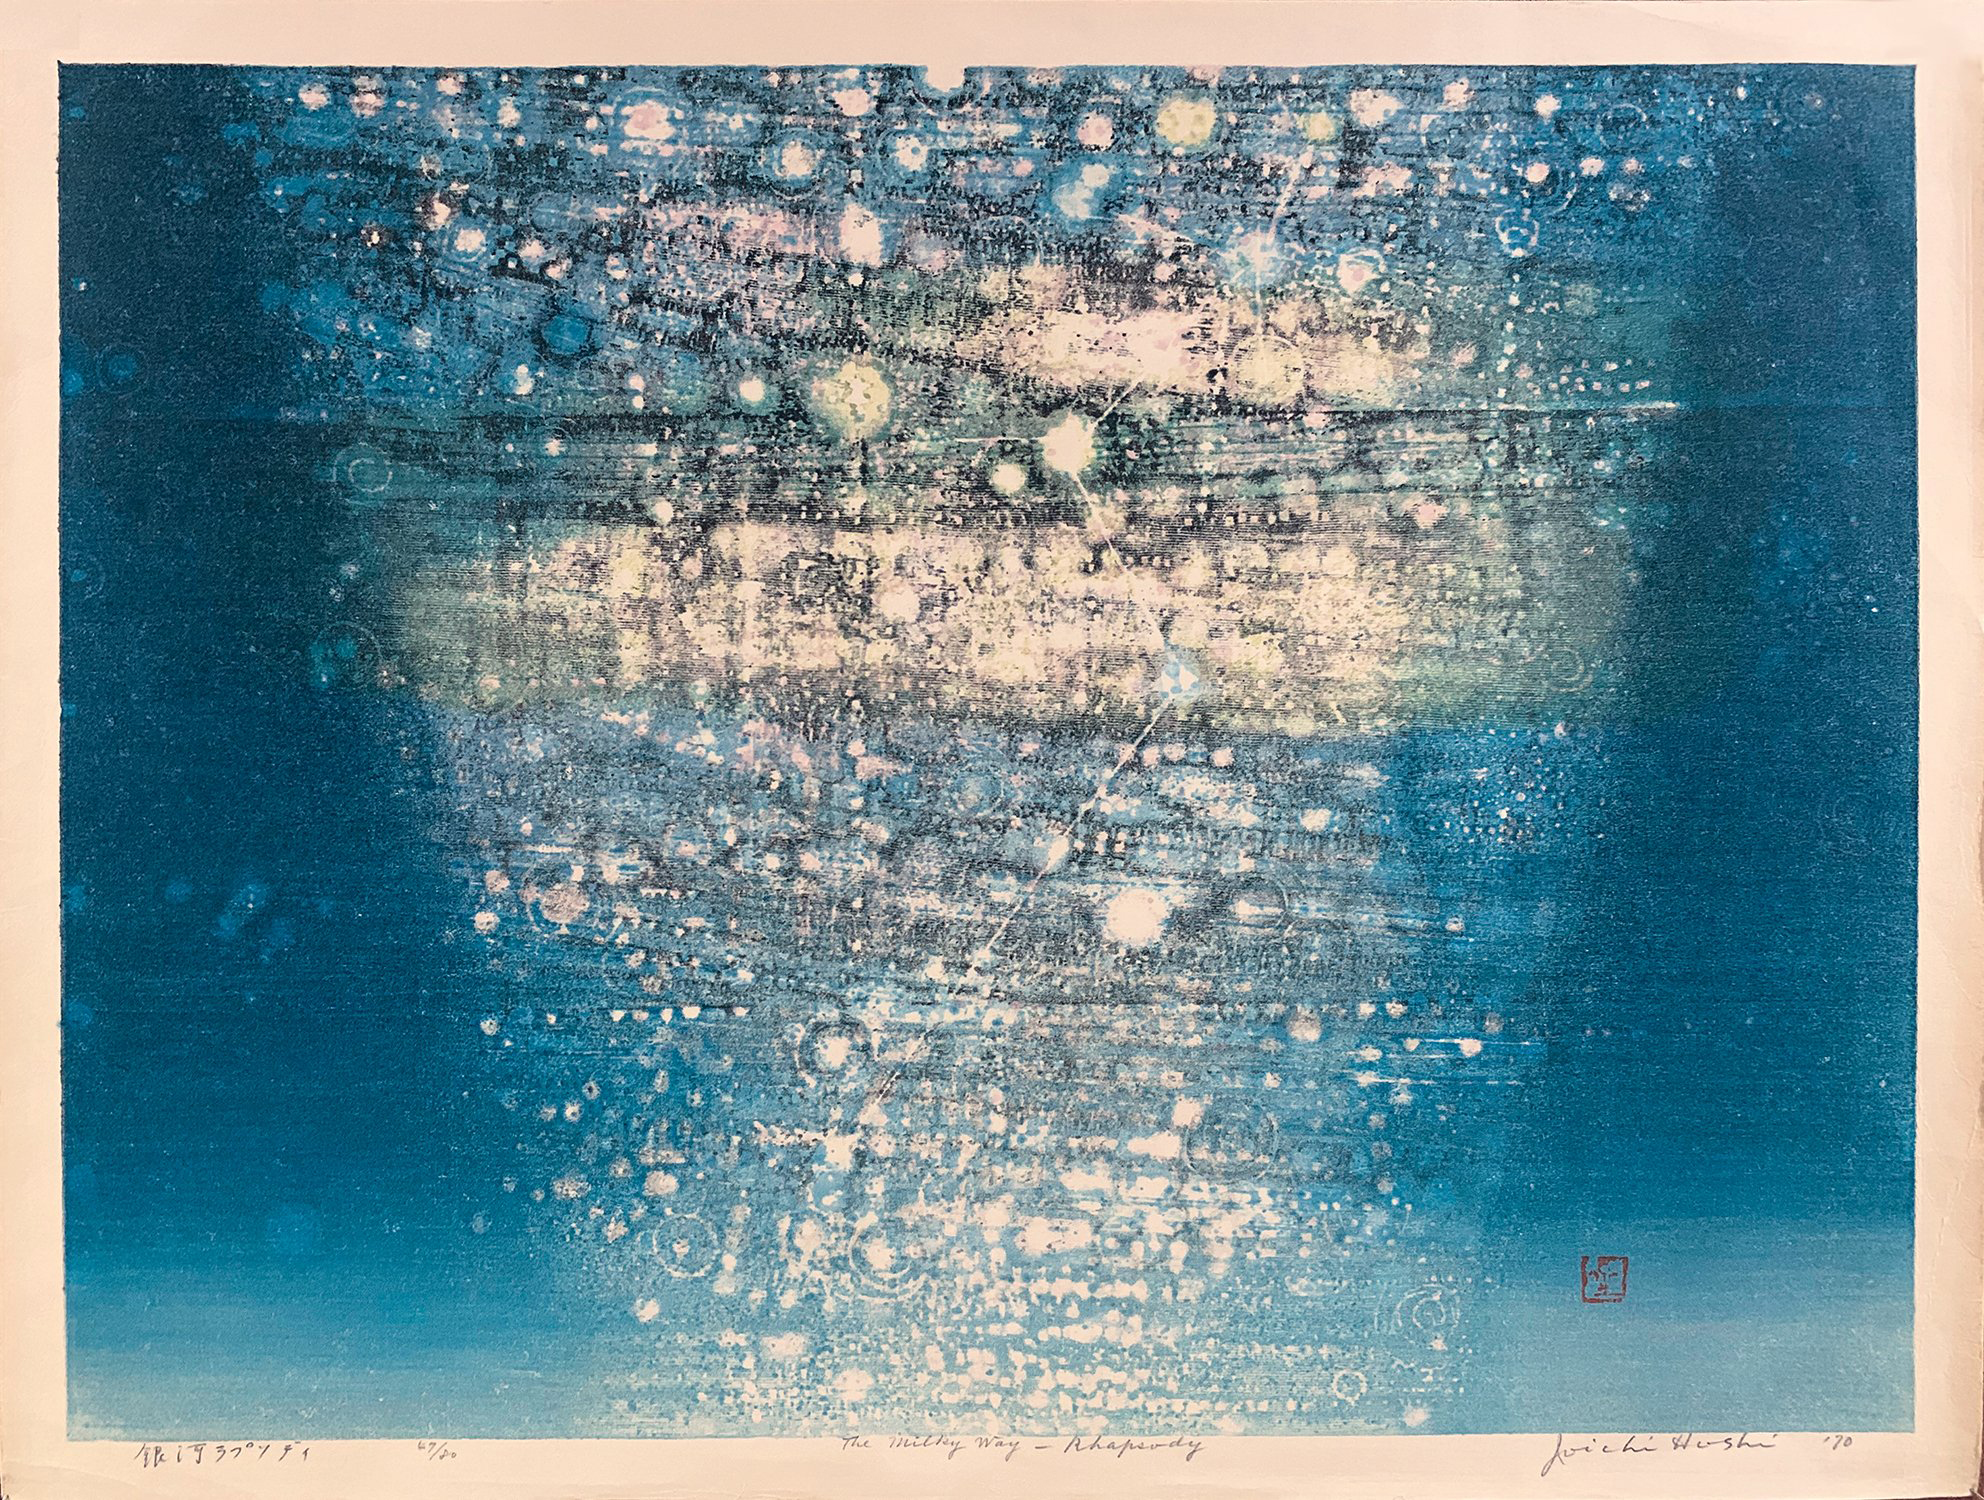 The Milky Way Rhapsody by Joichi Hoshi